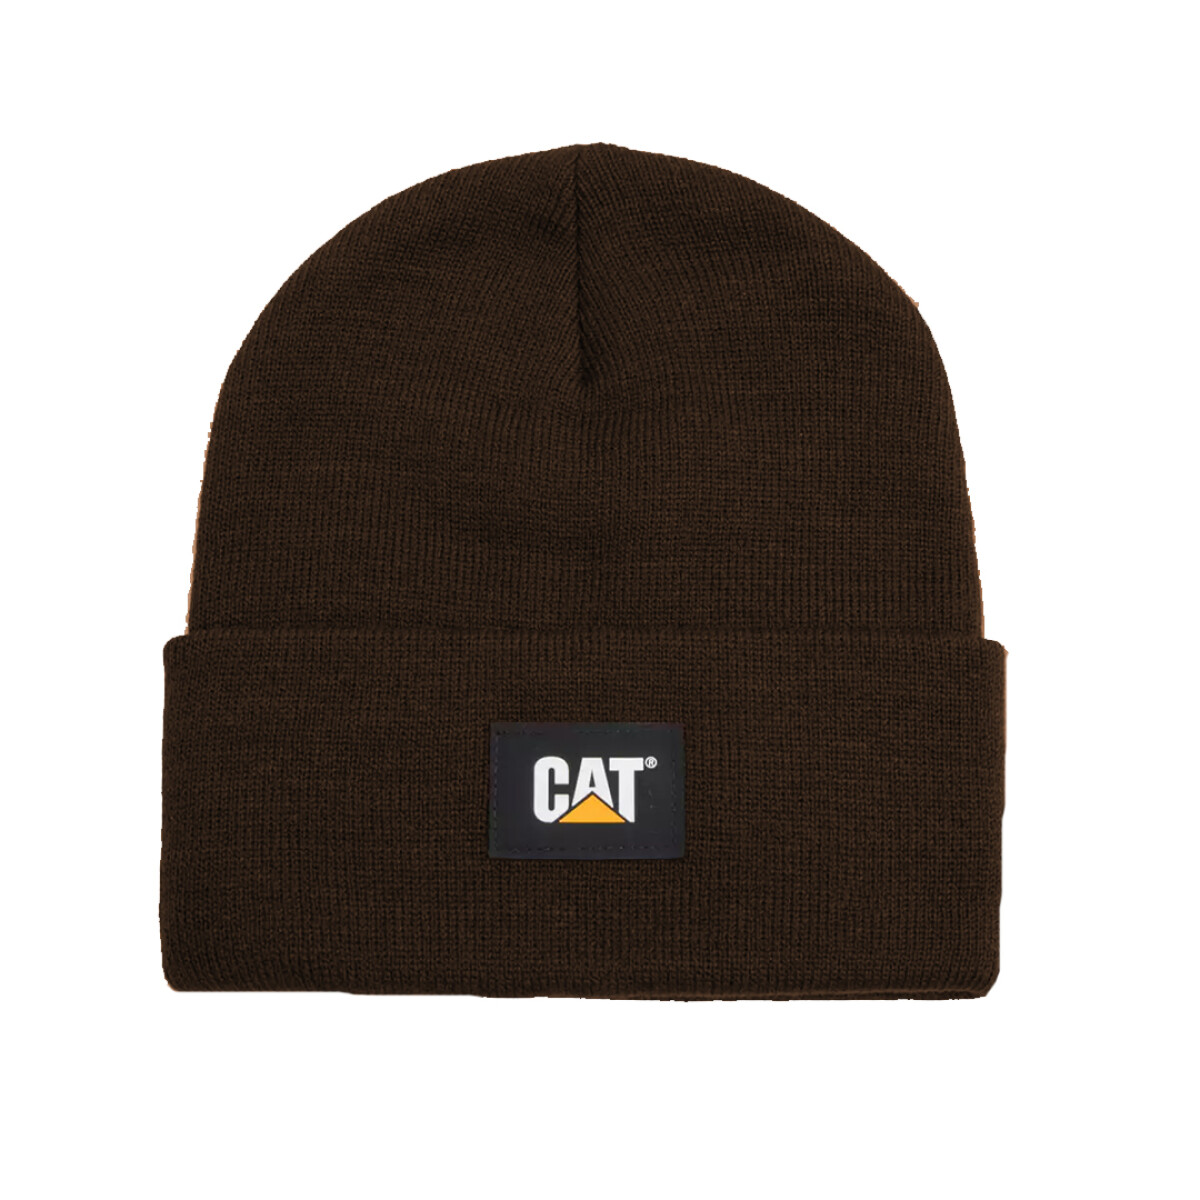 CAT LABEL CUFF - CAT 